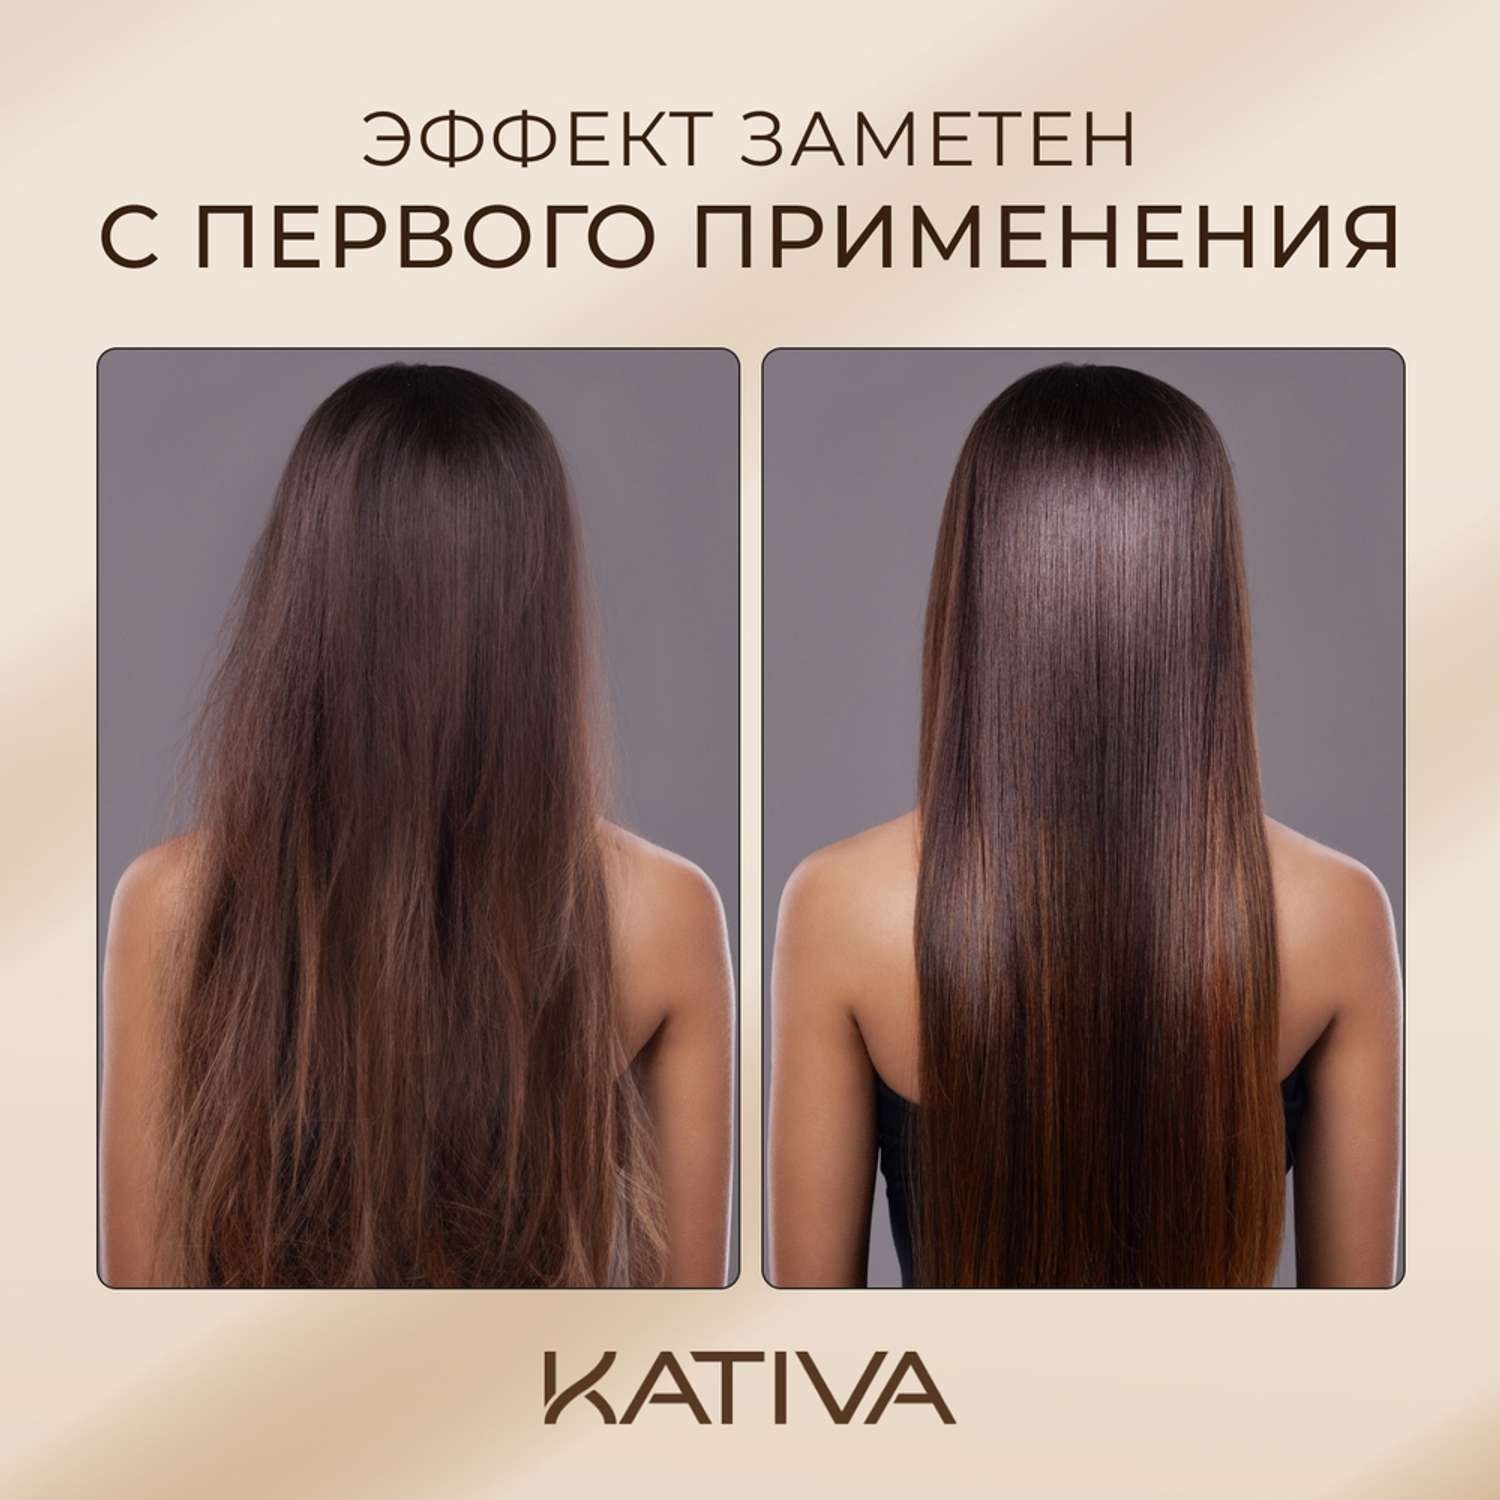 Увлажняющая маска для волос Kativa с маслом Арганы ARGAN OIL 500мл - фото 5